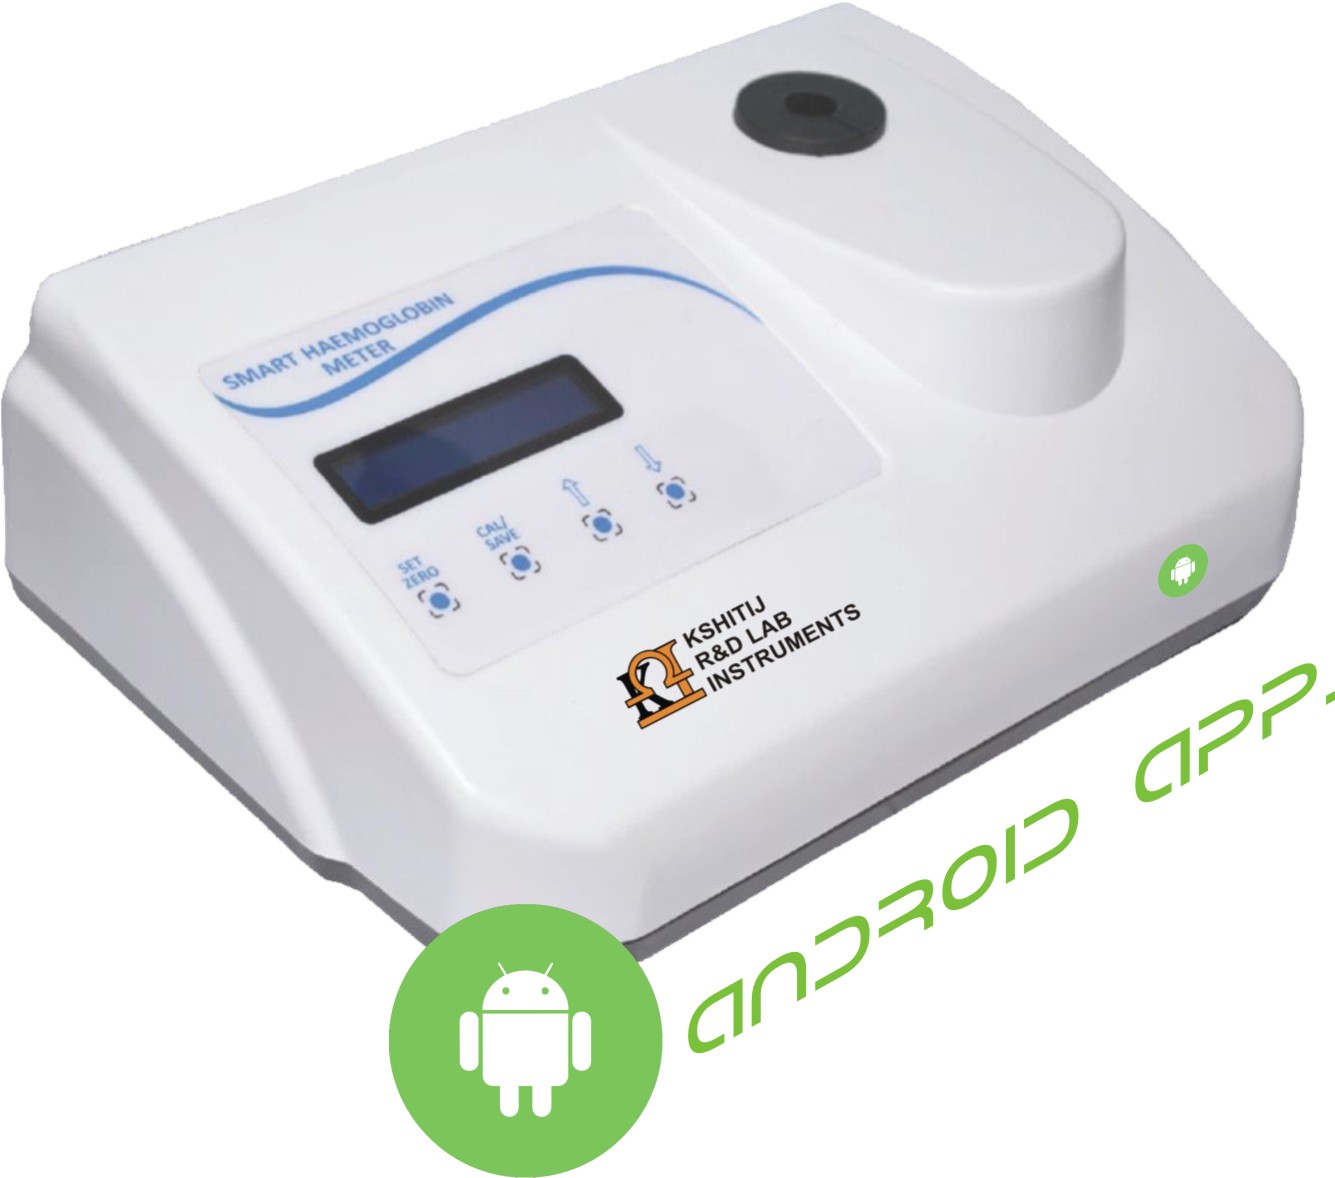 controller/assets/products_upload/Smart Hemoglobin Meter ( Android Based), Model No.: KI - 163